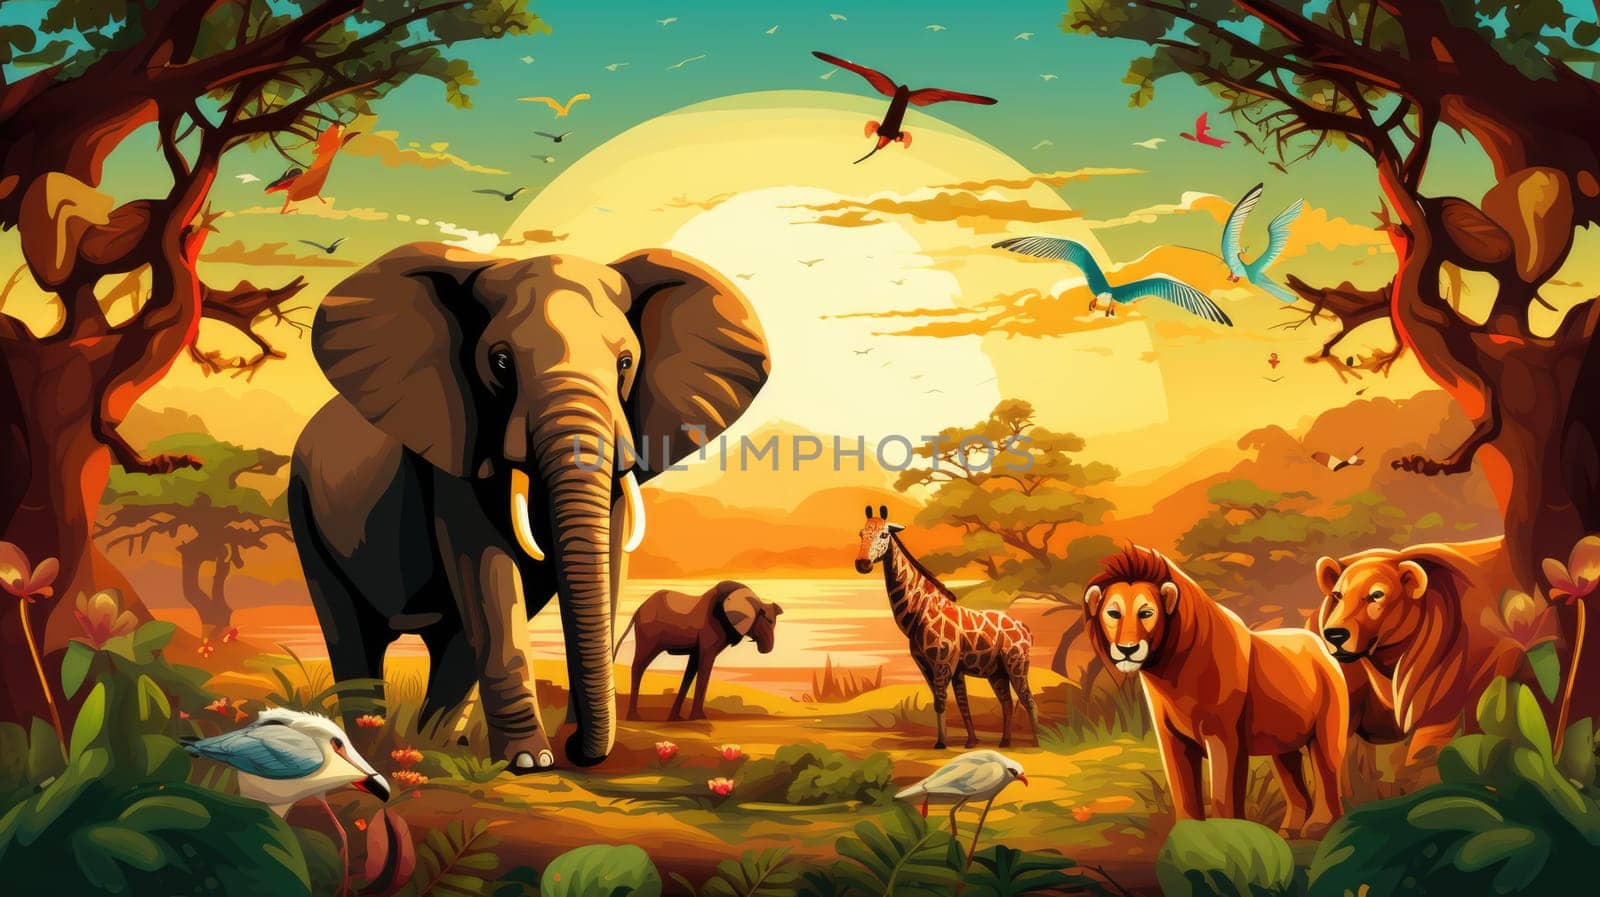 Safari adventure photo realistic illustration - AI generated. Savannah, elephants, tree, sunset.